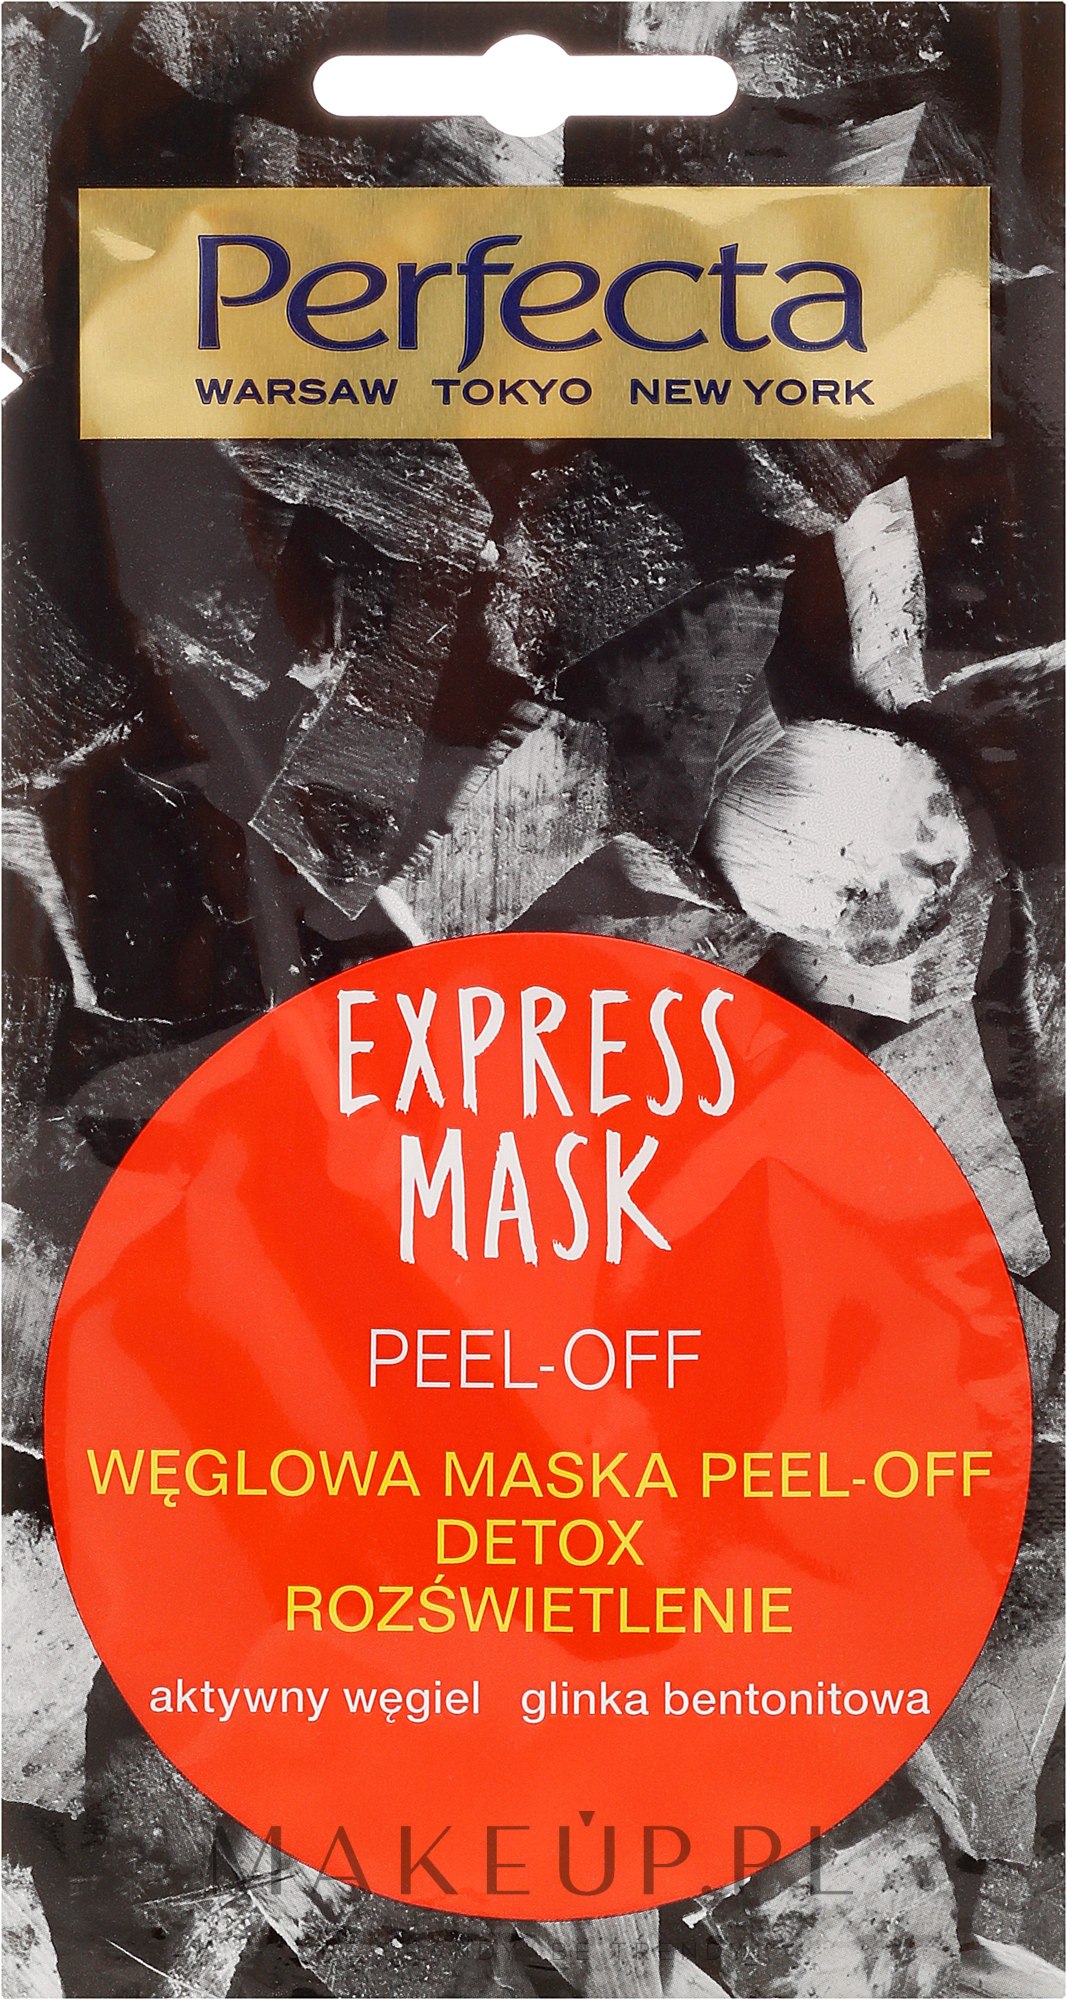 Węglowa maska do twarzy peel-off Detox i rozświetlenie - Perfecta Express Mask — Zdjęcie 8 ml